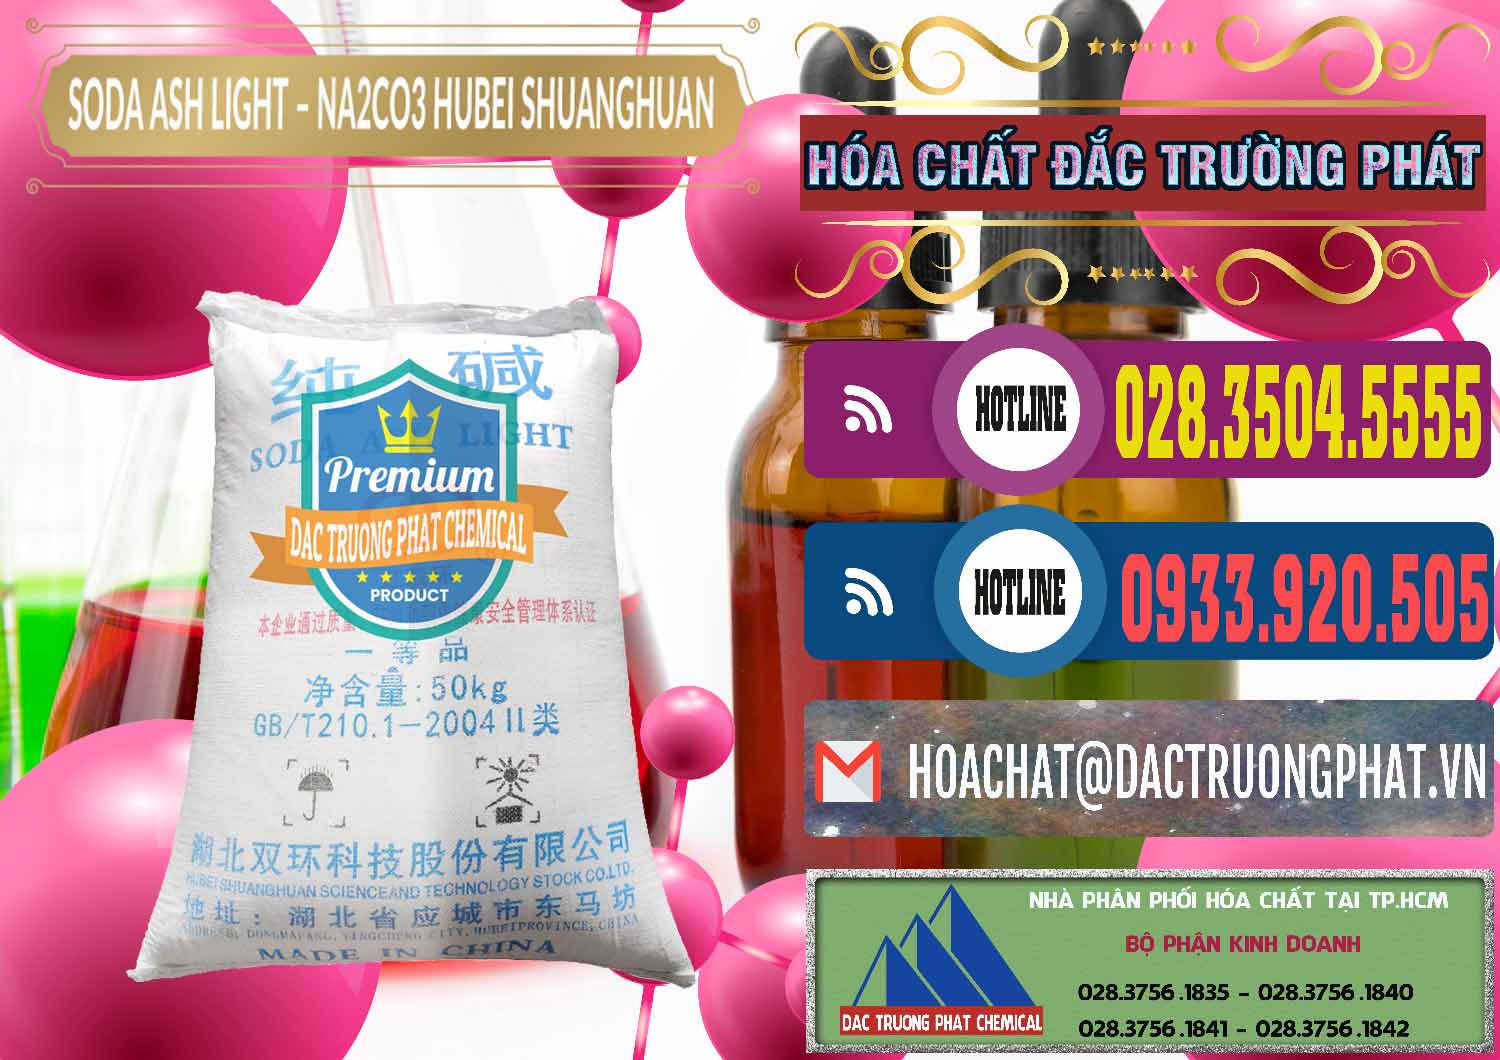 Nơi chuyên cung ứng và bán Soda Ash Light - NA2CO3 2 Vòng Tròn Hubei Shuanghuan Trung Quốc China - 0130 - Đơn vị nhập khẩu - phân phối hóa chất tại TP.HCM - muabanhoachat.com.vn